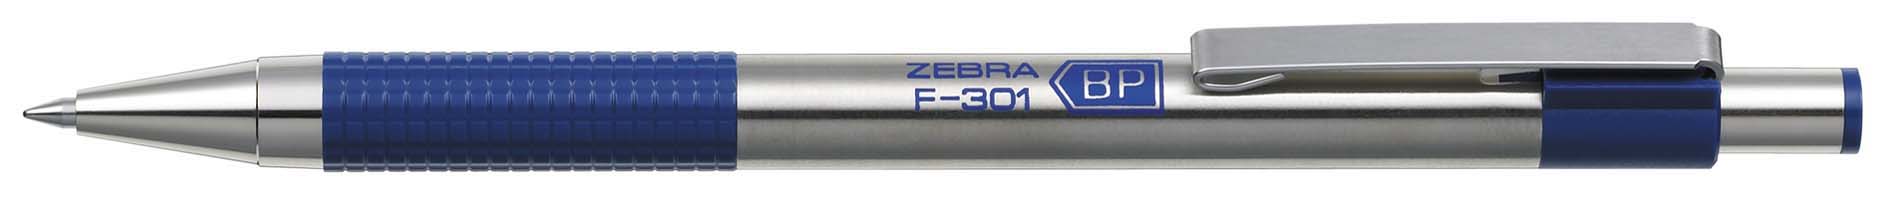 R01-090 Automatinis tušinukas F-301 0.7mm mėlynas EF301BL ZEBRA/12